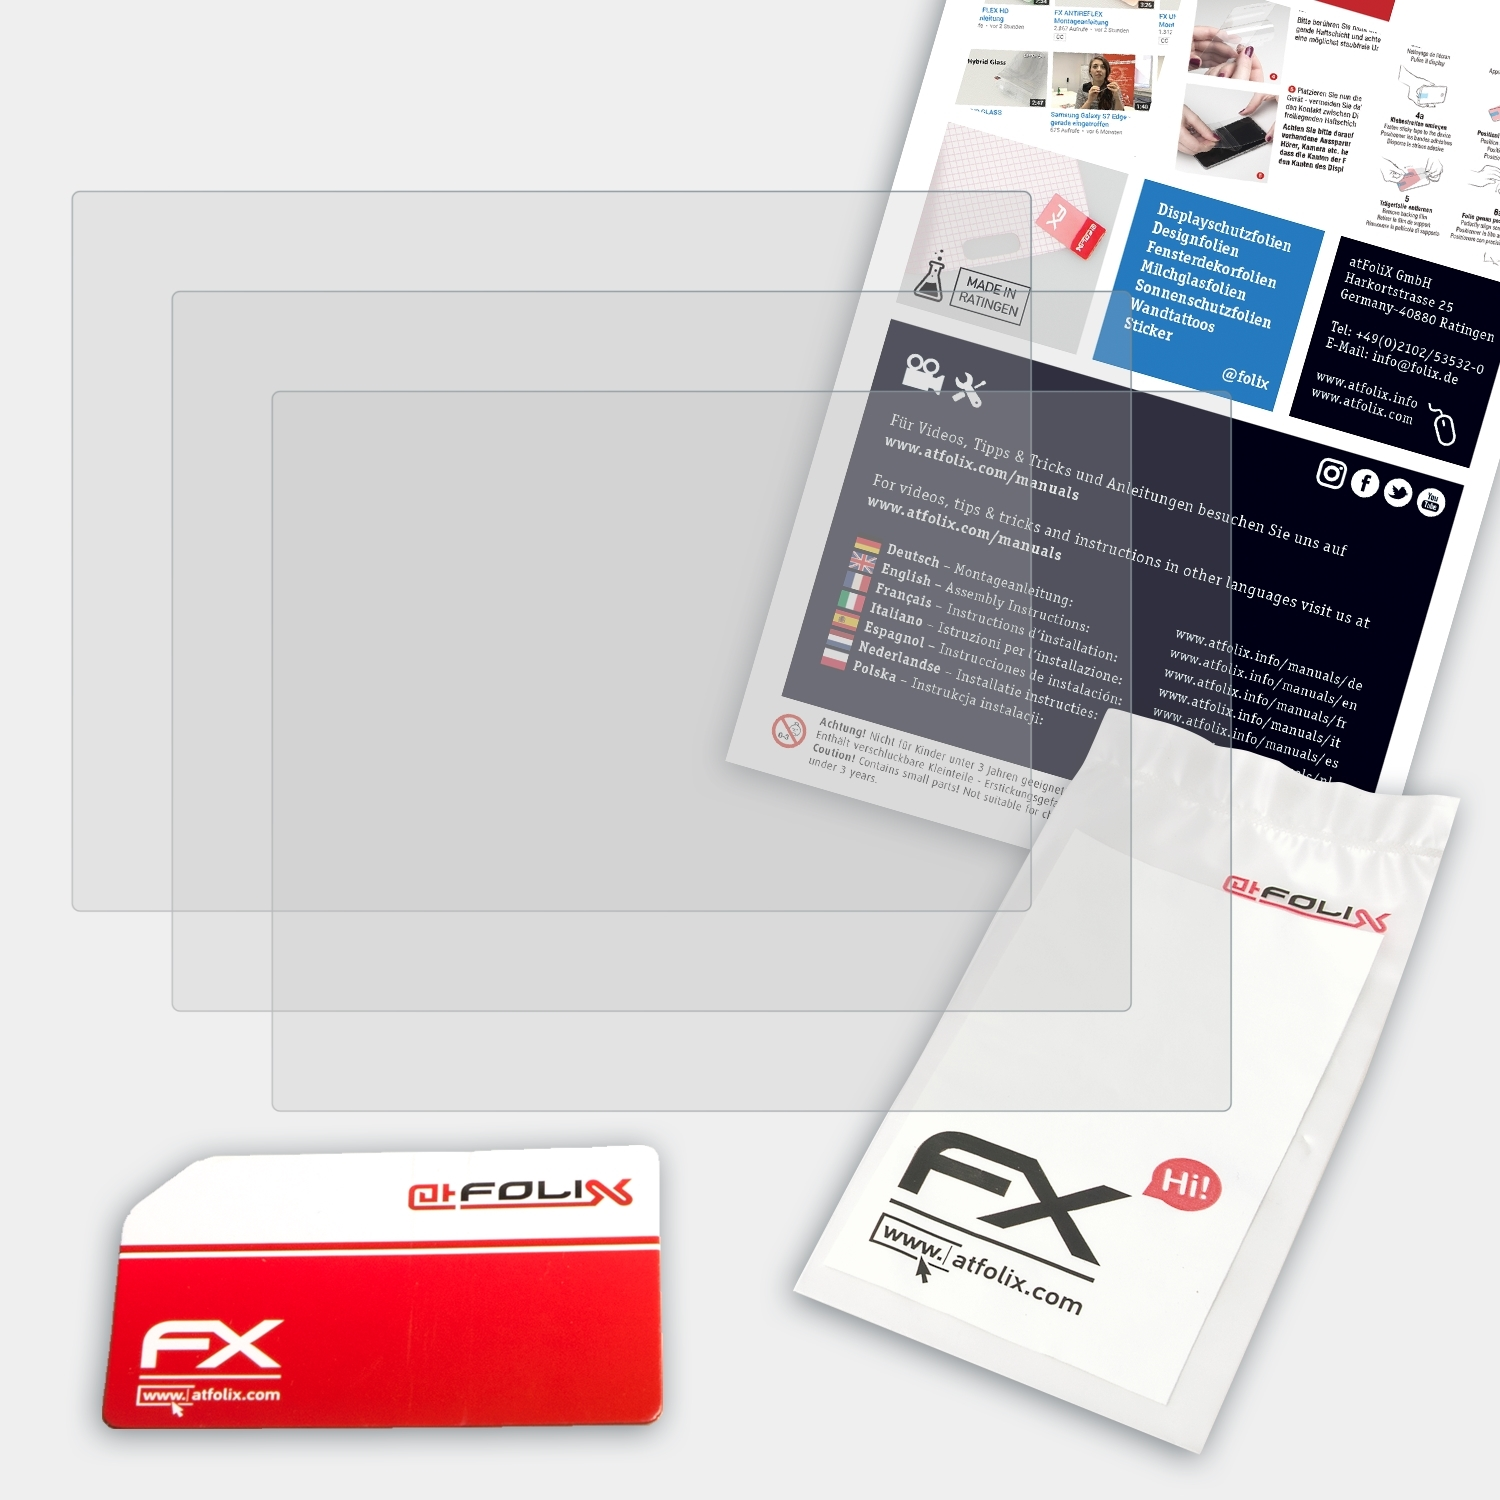 Displayschutz(für ATFOLIX FX-Antireflex Fujifilm 3x X-Pro1)